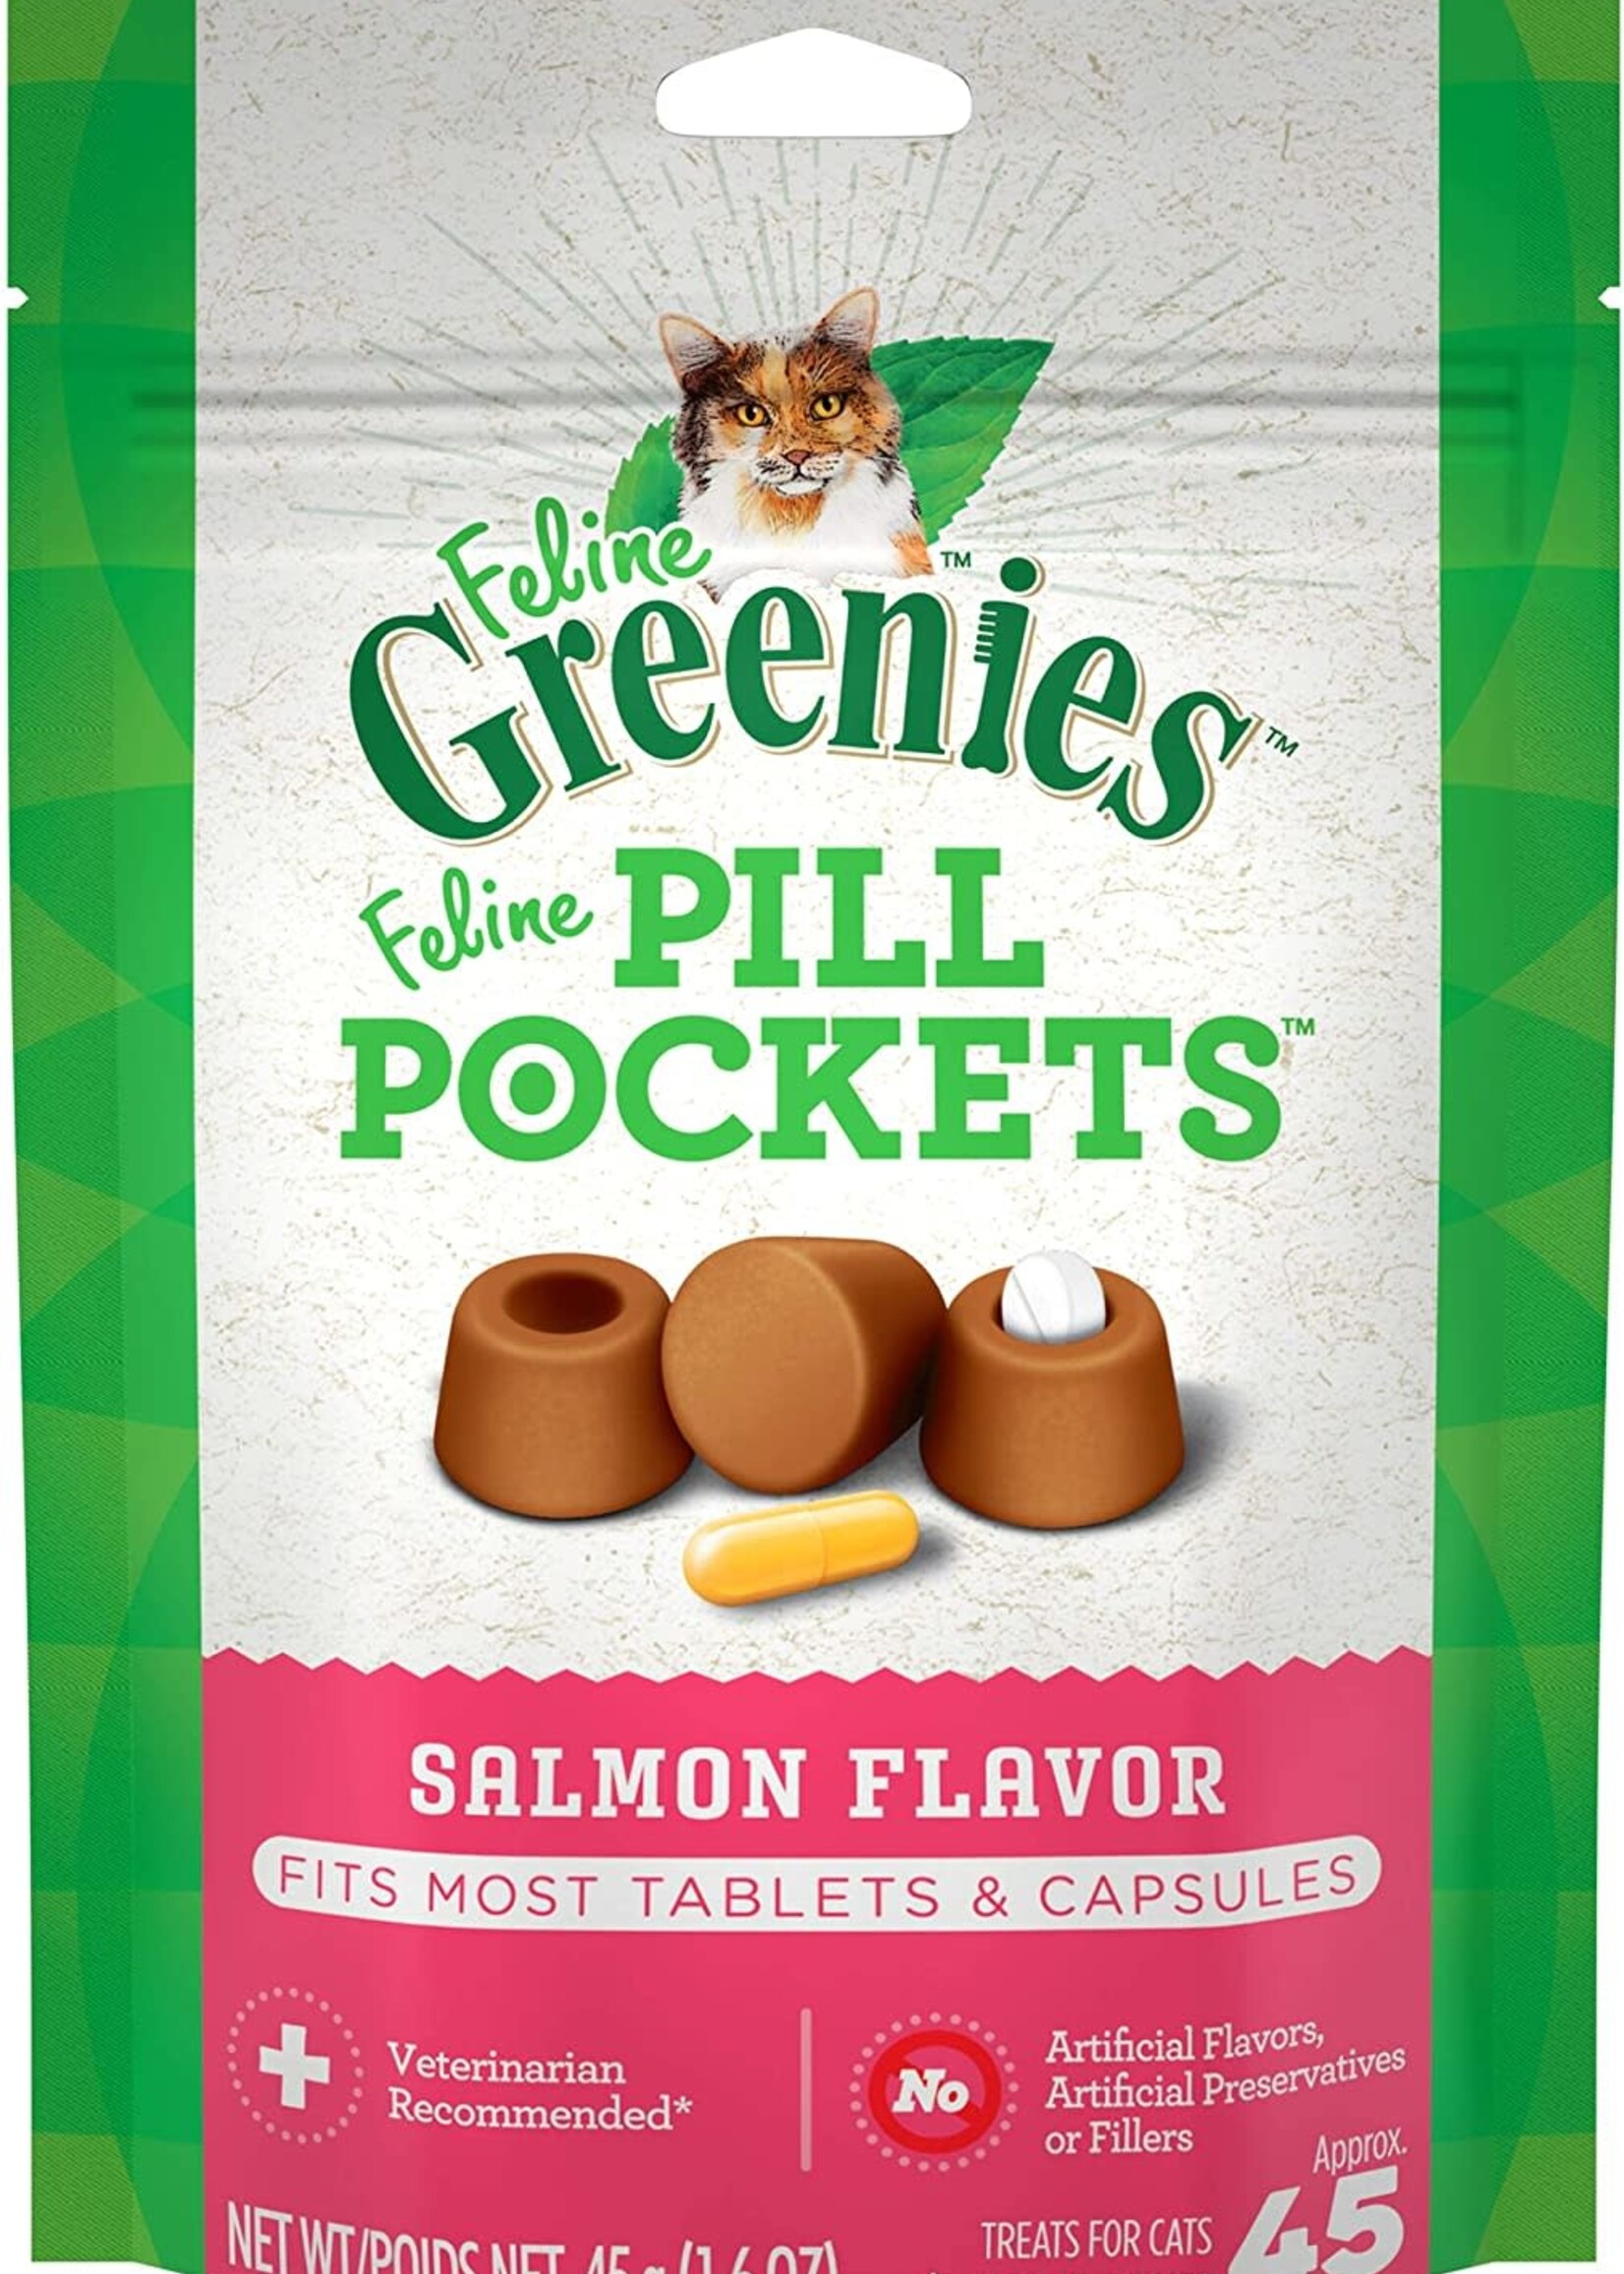 GREENIES GREENIES Feline Pill Pockets Salmon Flavor Cat Treats 1.6-oz